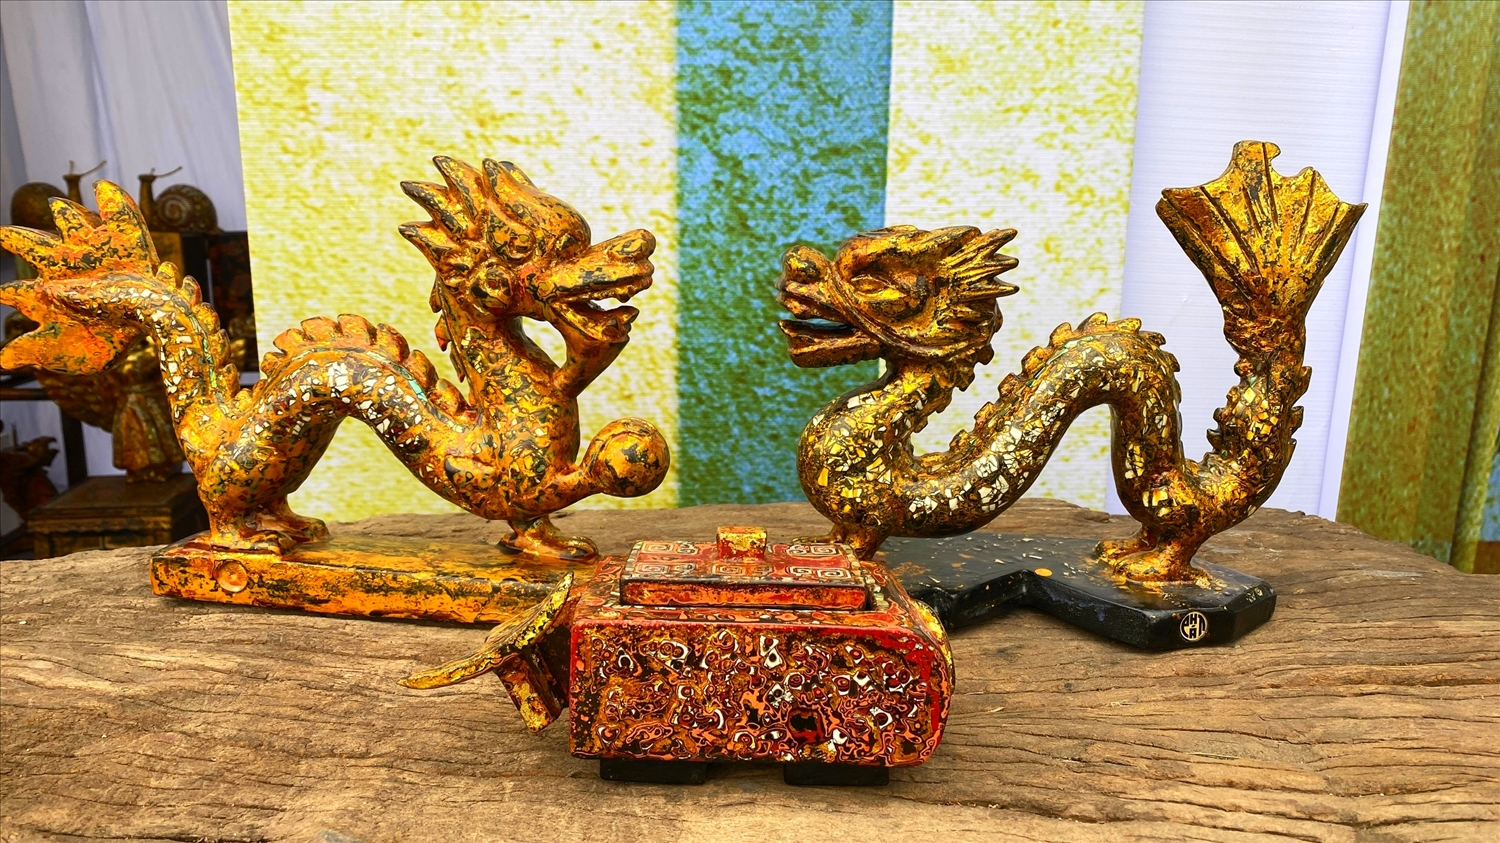 Đôi rồng độc đáo trên chất liệu khắc gỗ kết hợp sơn mài.